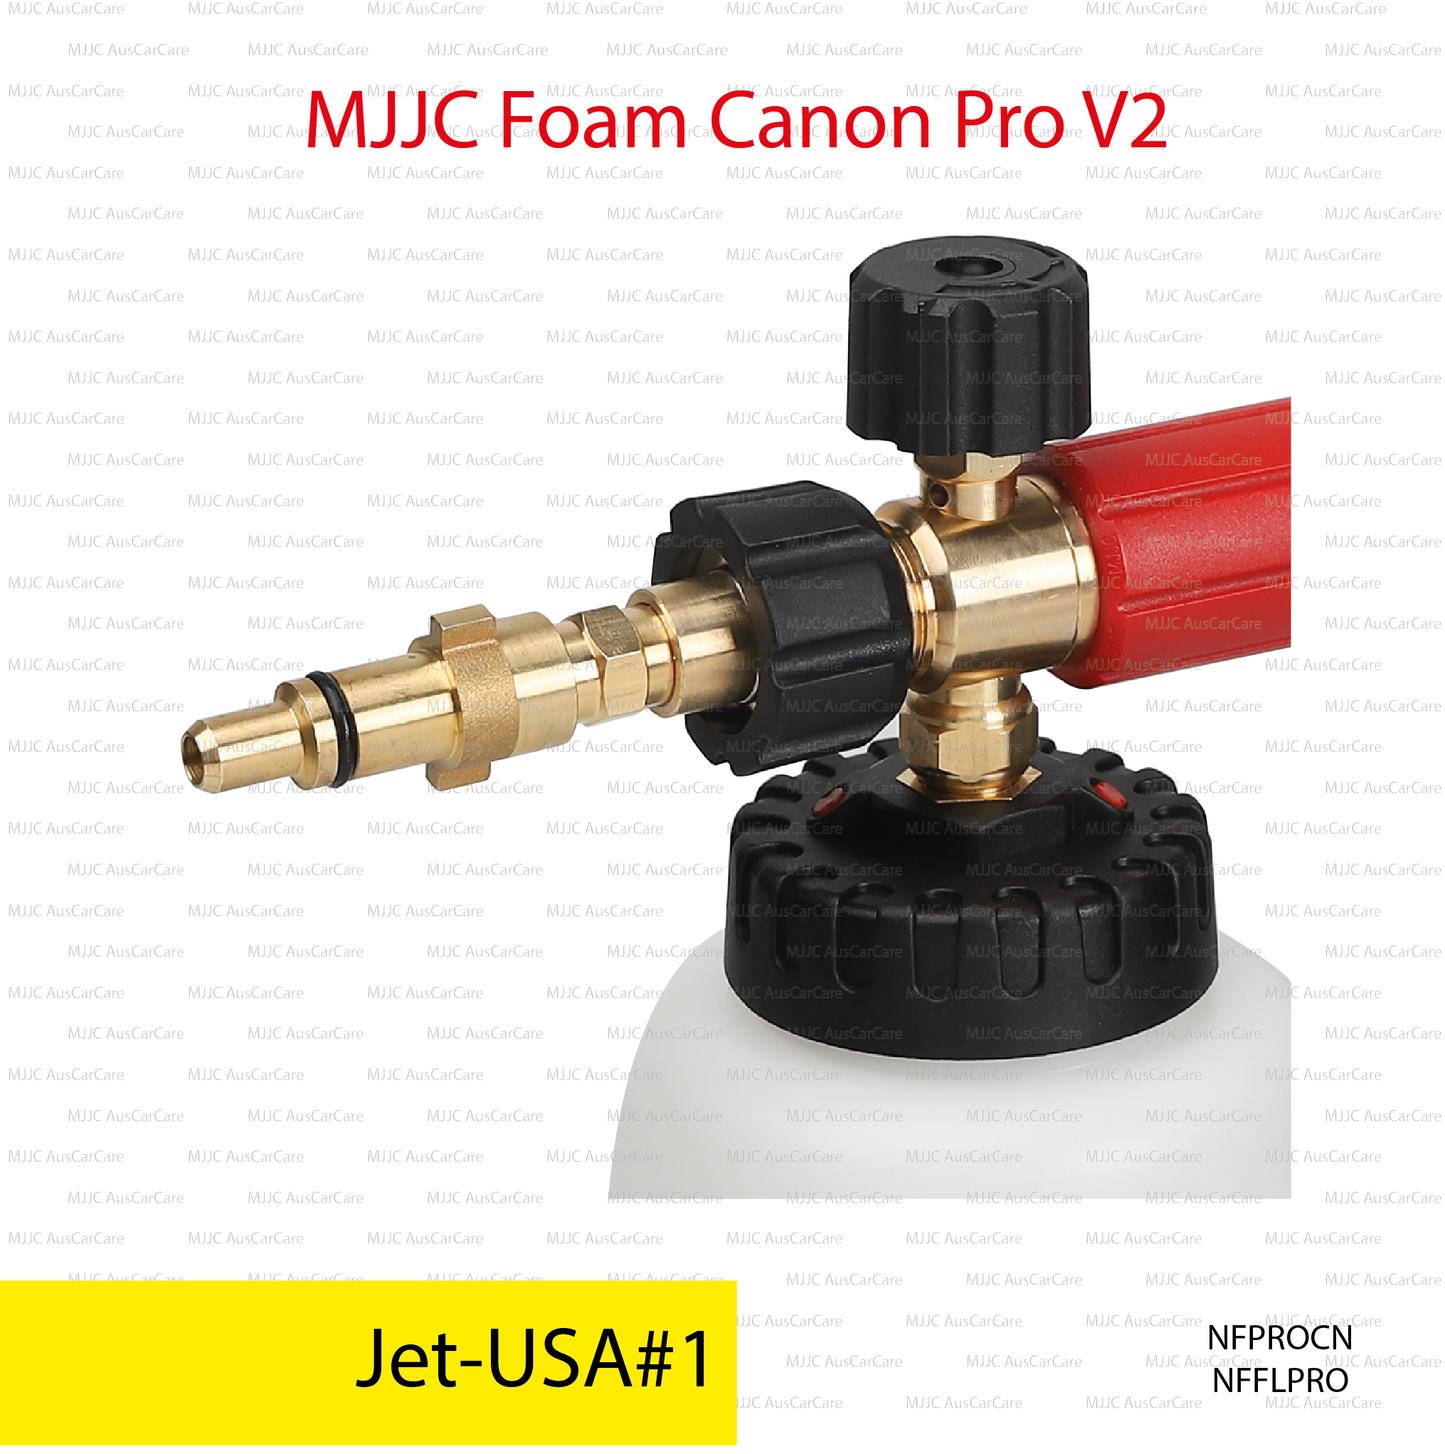 Jet-USA#1 (NFPROCN) Adapter for MJJC Foam Cannon Pro V2 (NFFLPRO)